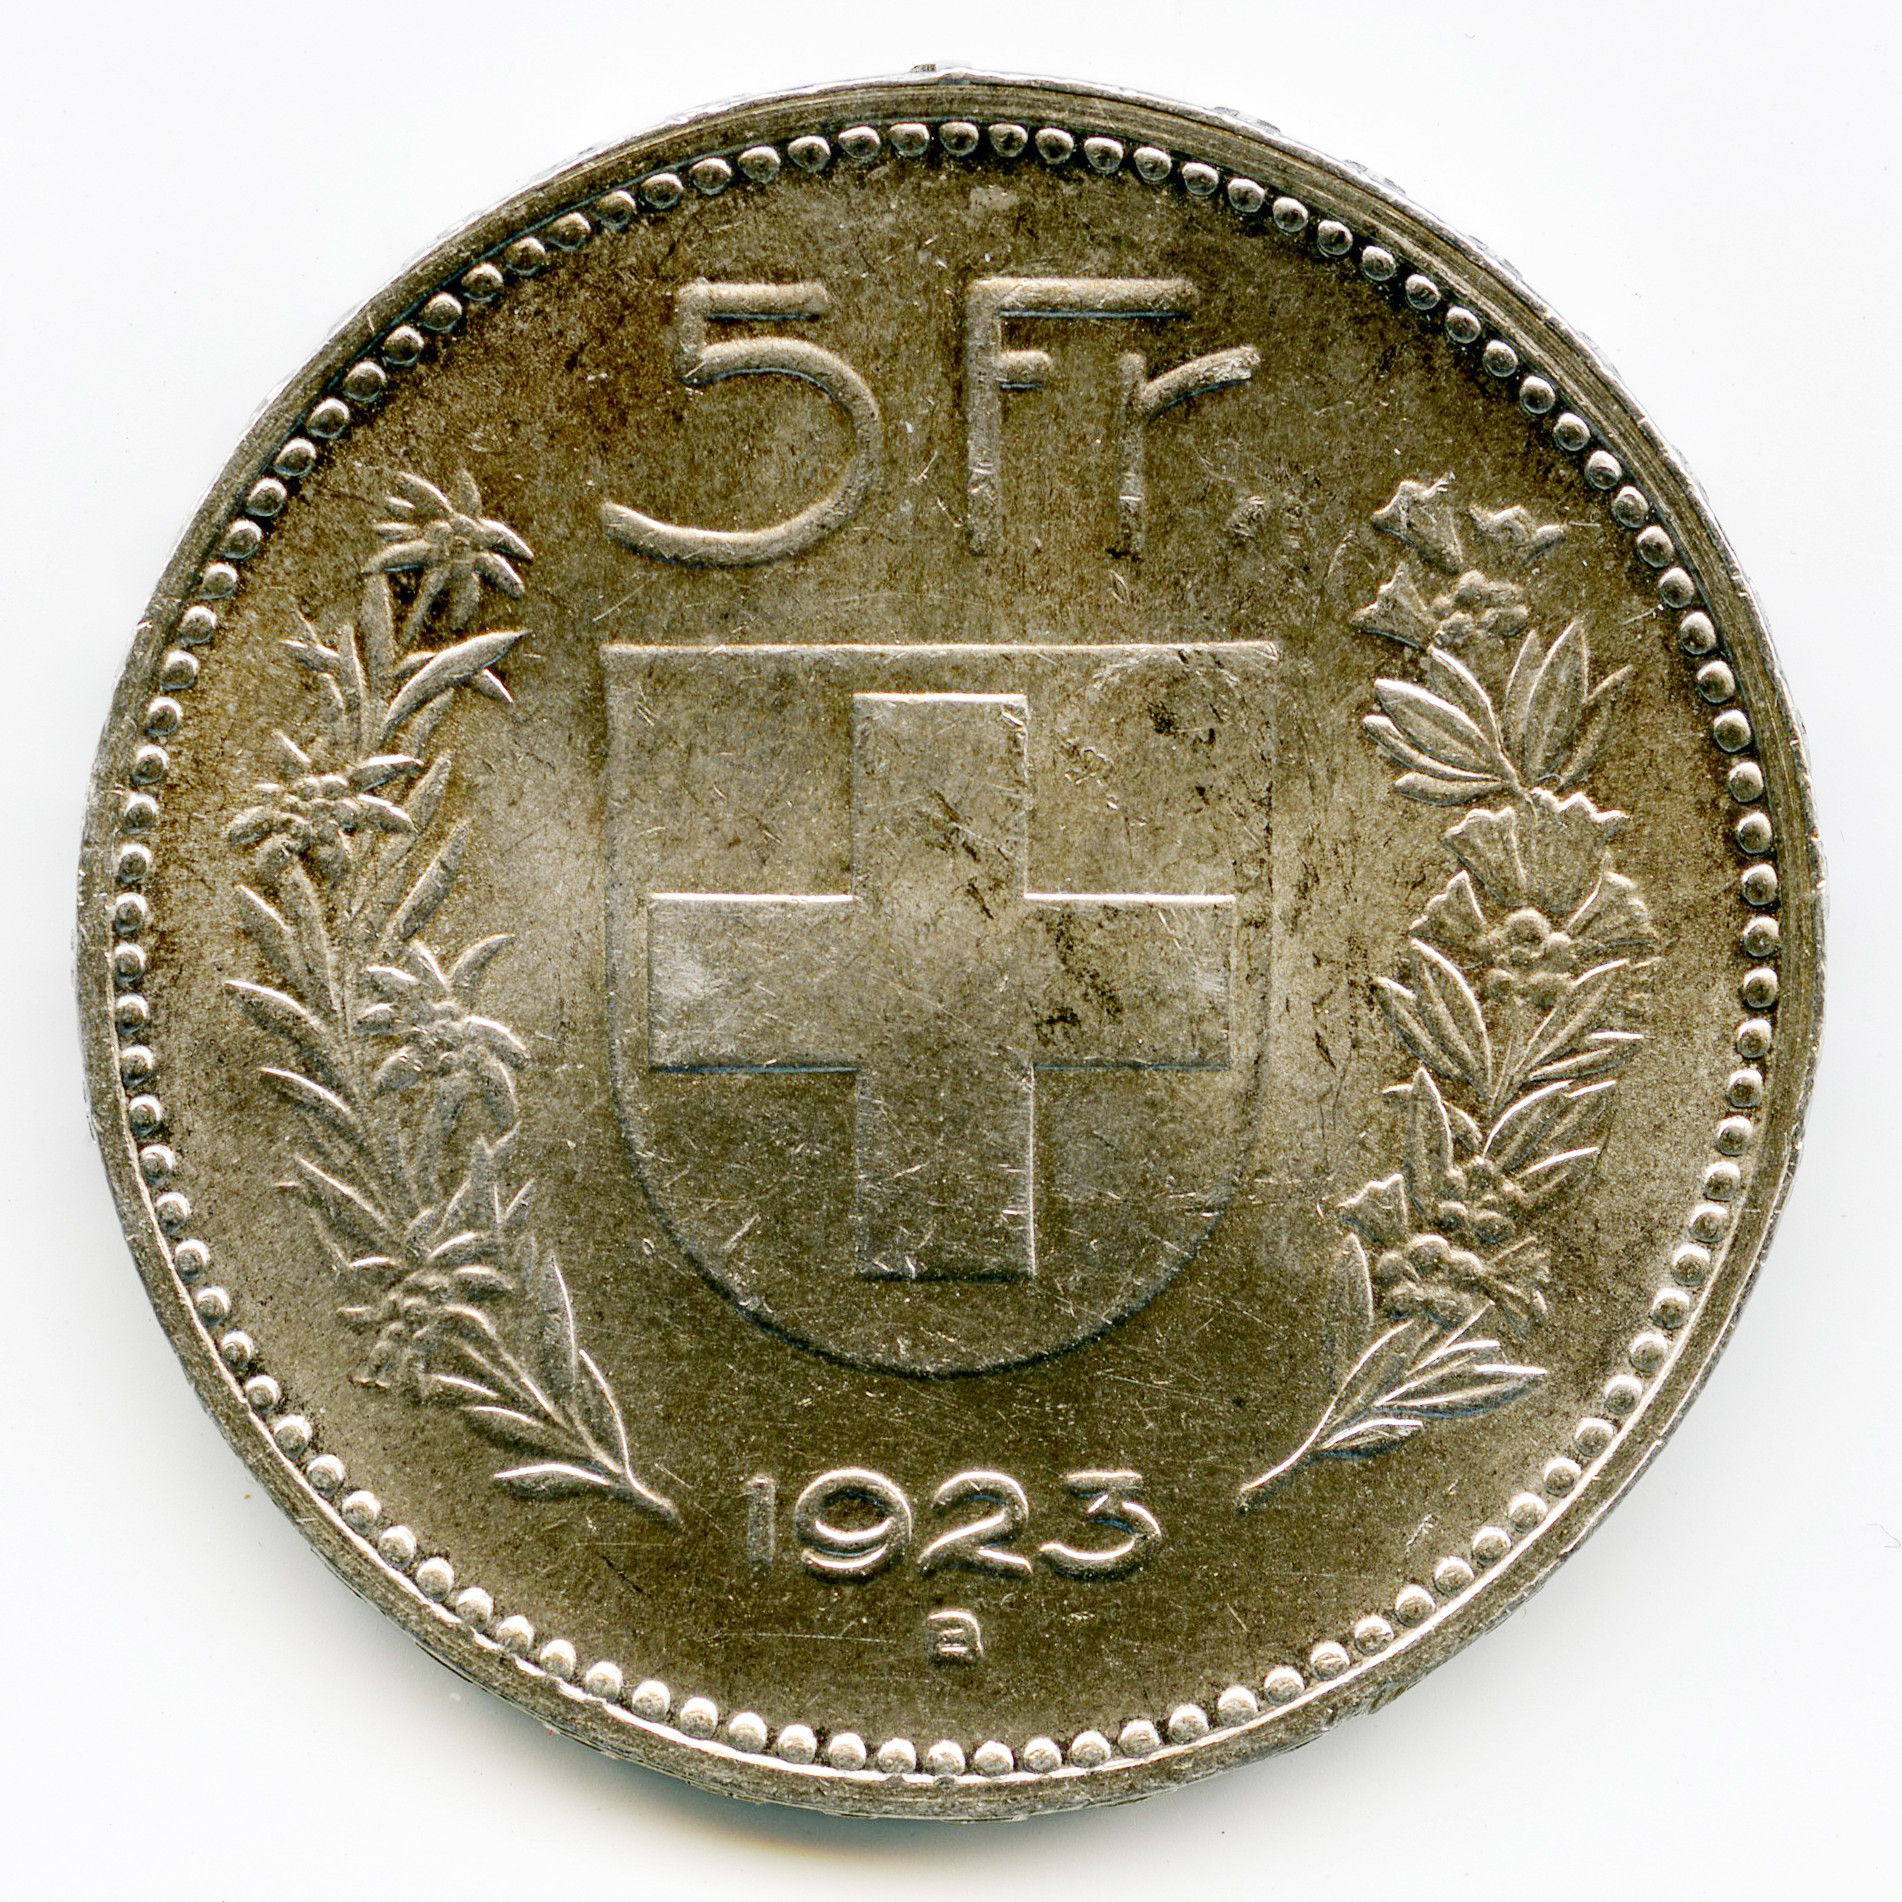 Suisse - 5 Francs - 1932 B revers